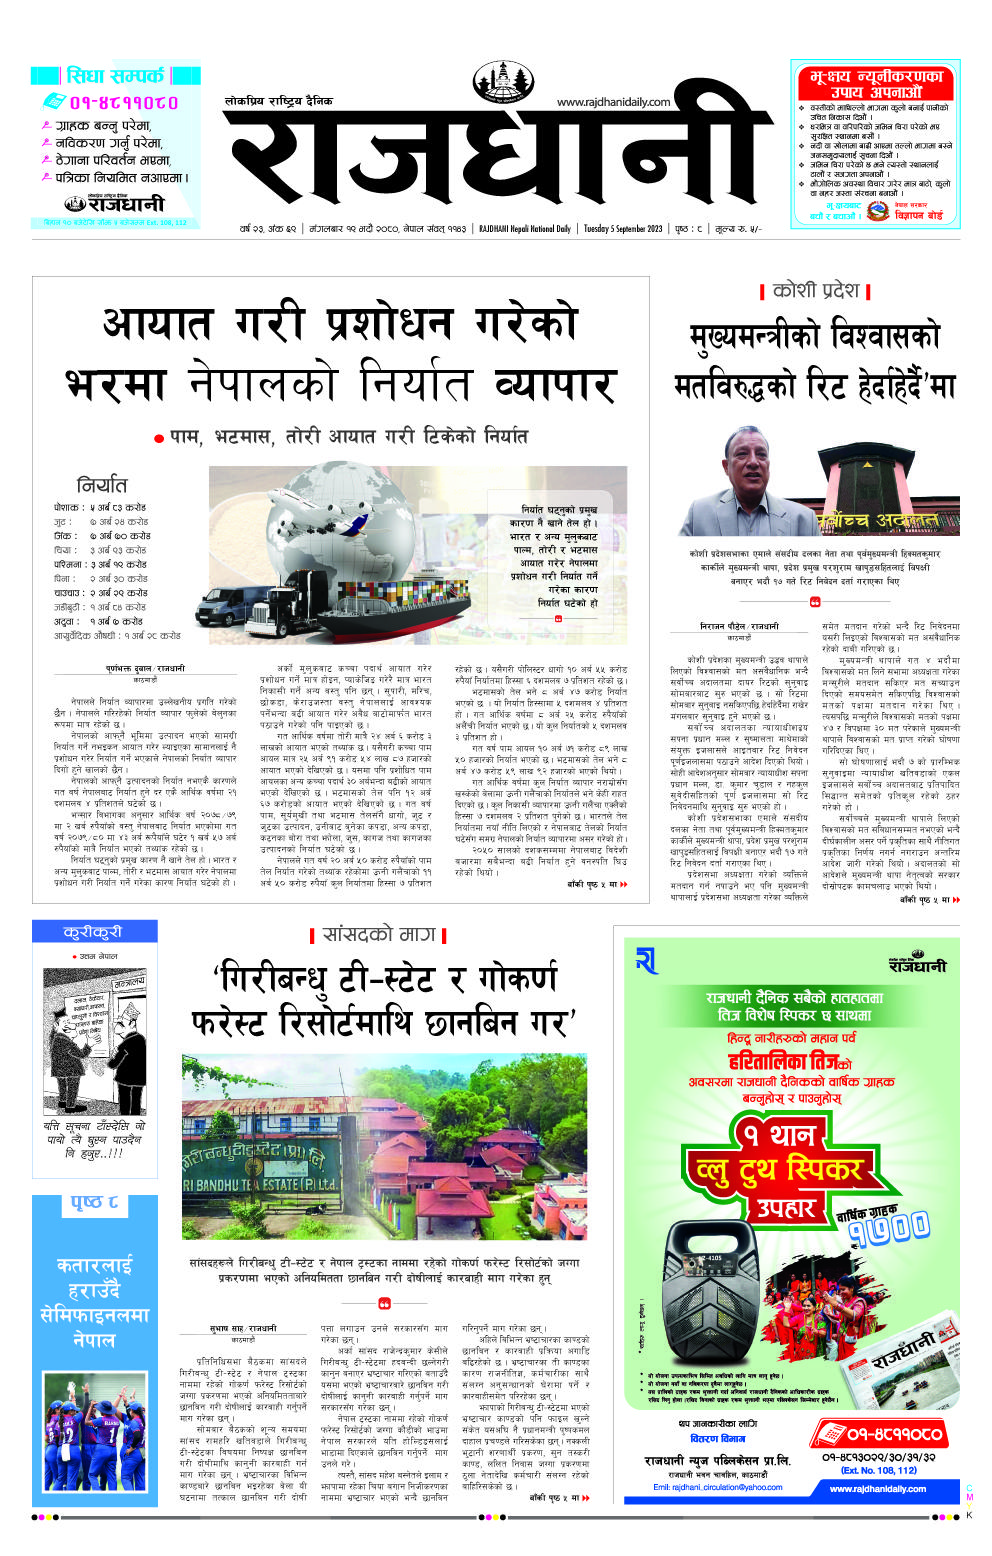 Rajdhani Rastriya Dainik : Bhadau-19, 2080 | Online Nepali News Portal | Online News Portal in Nepal